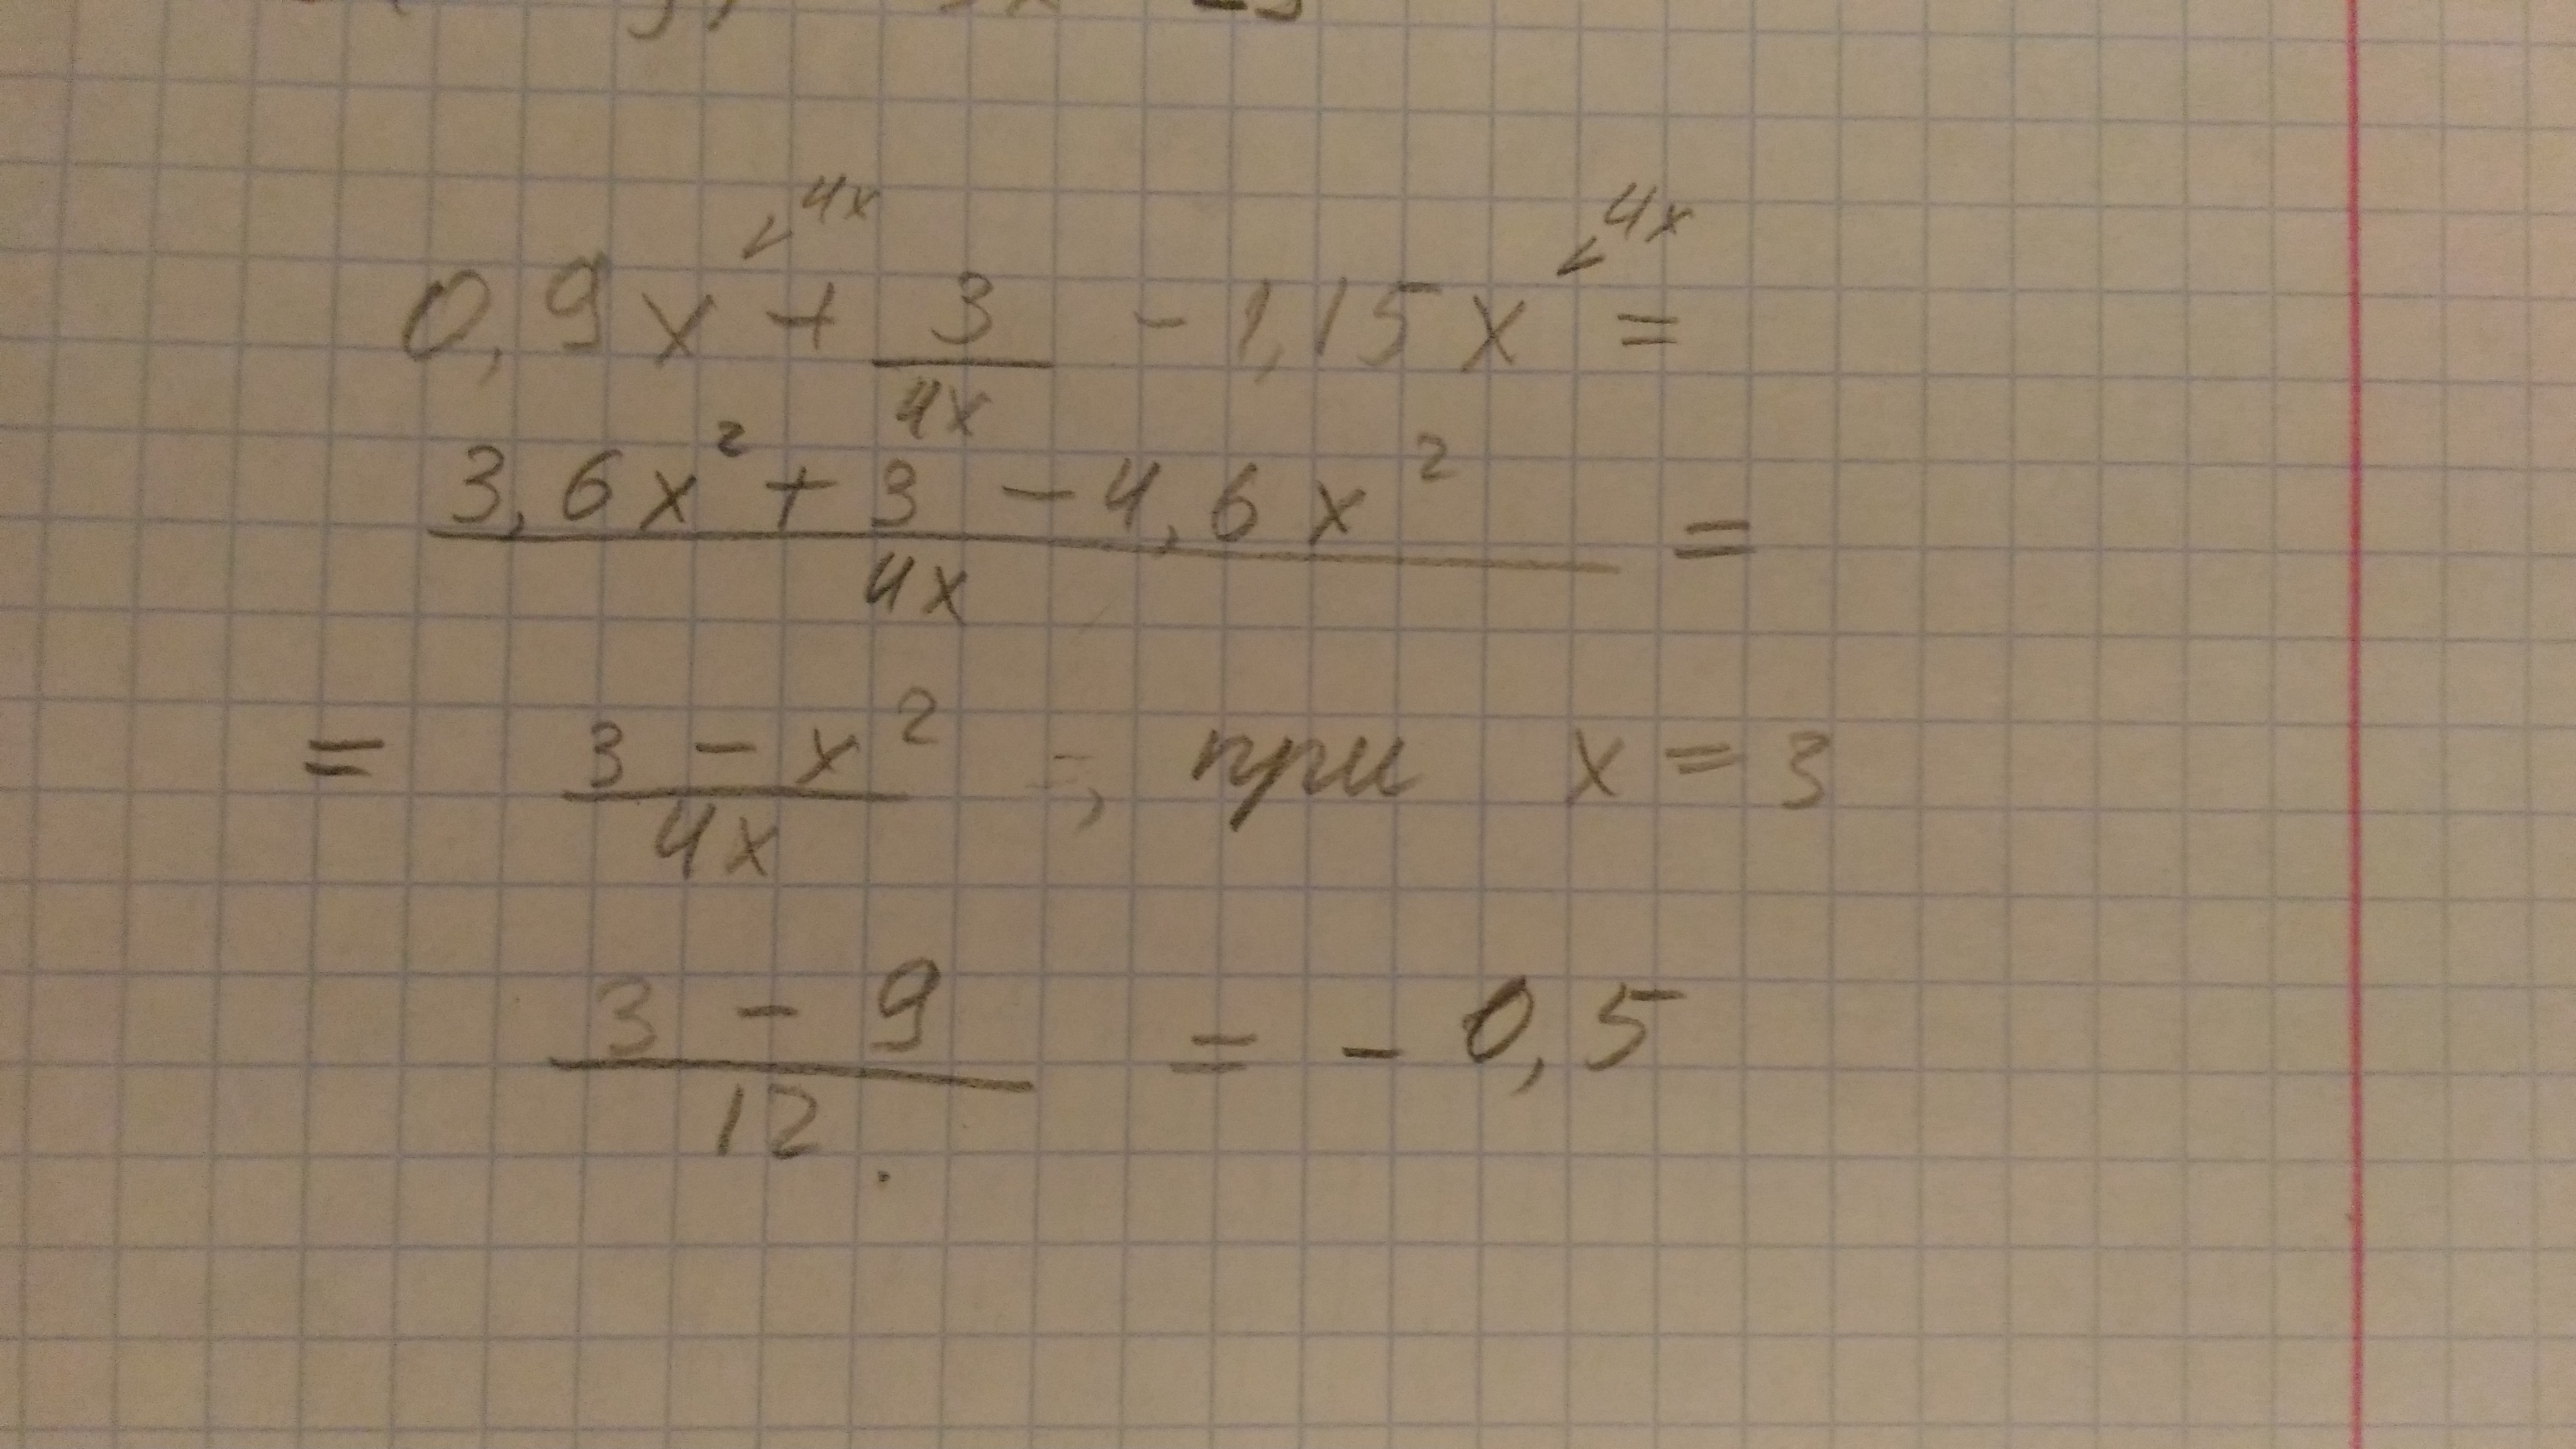 4x 3 64. |-4|+|1-3x| при x. [3x-3]-4x при x= -2. 4 4 5 X X      при x  3. 3x-|4x+15| при x=-8.